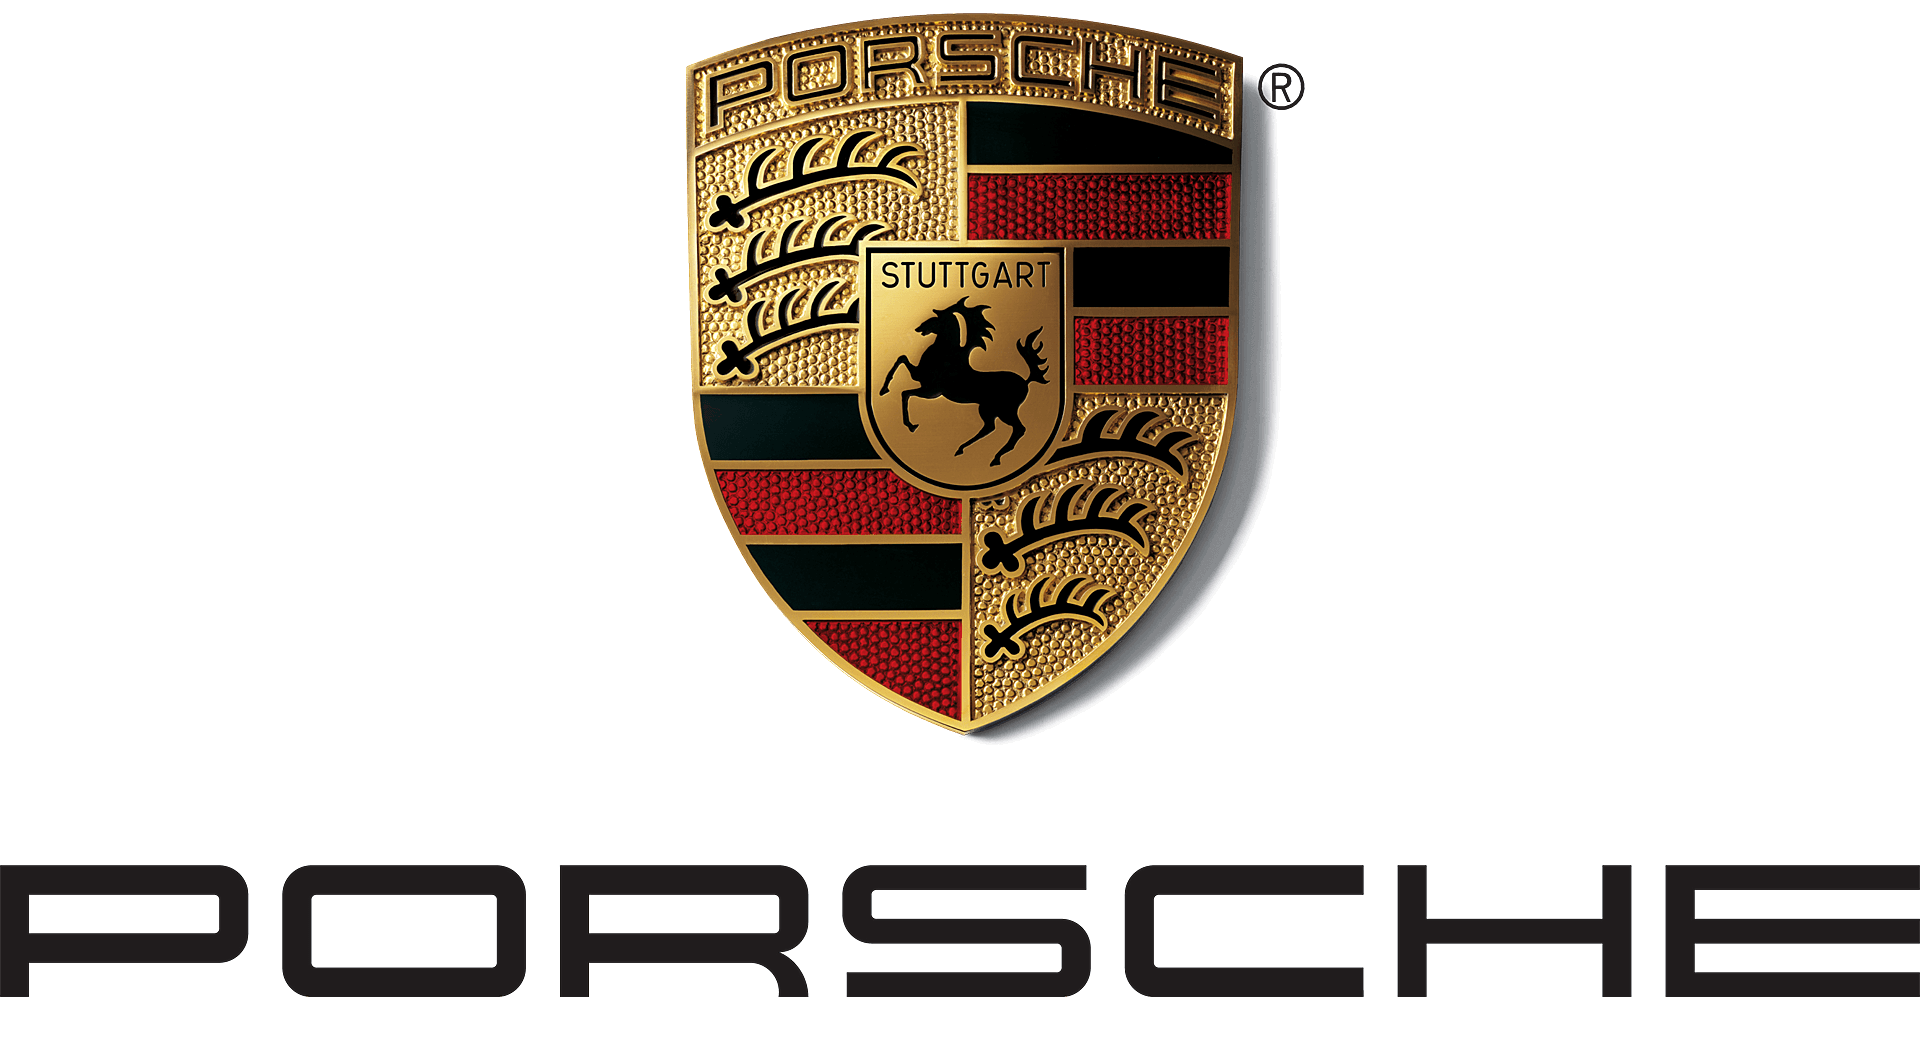 La Porsches 911 par passion